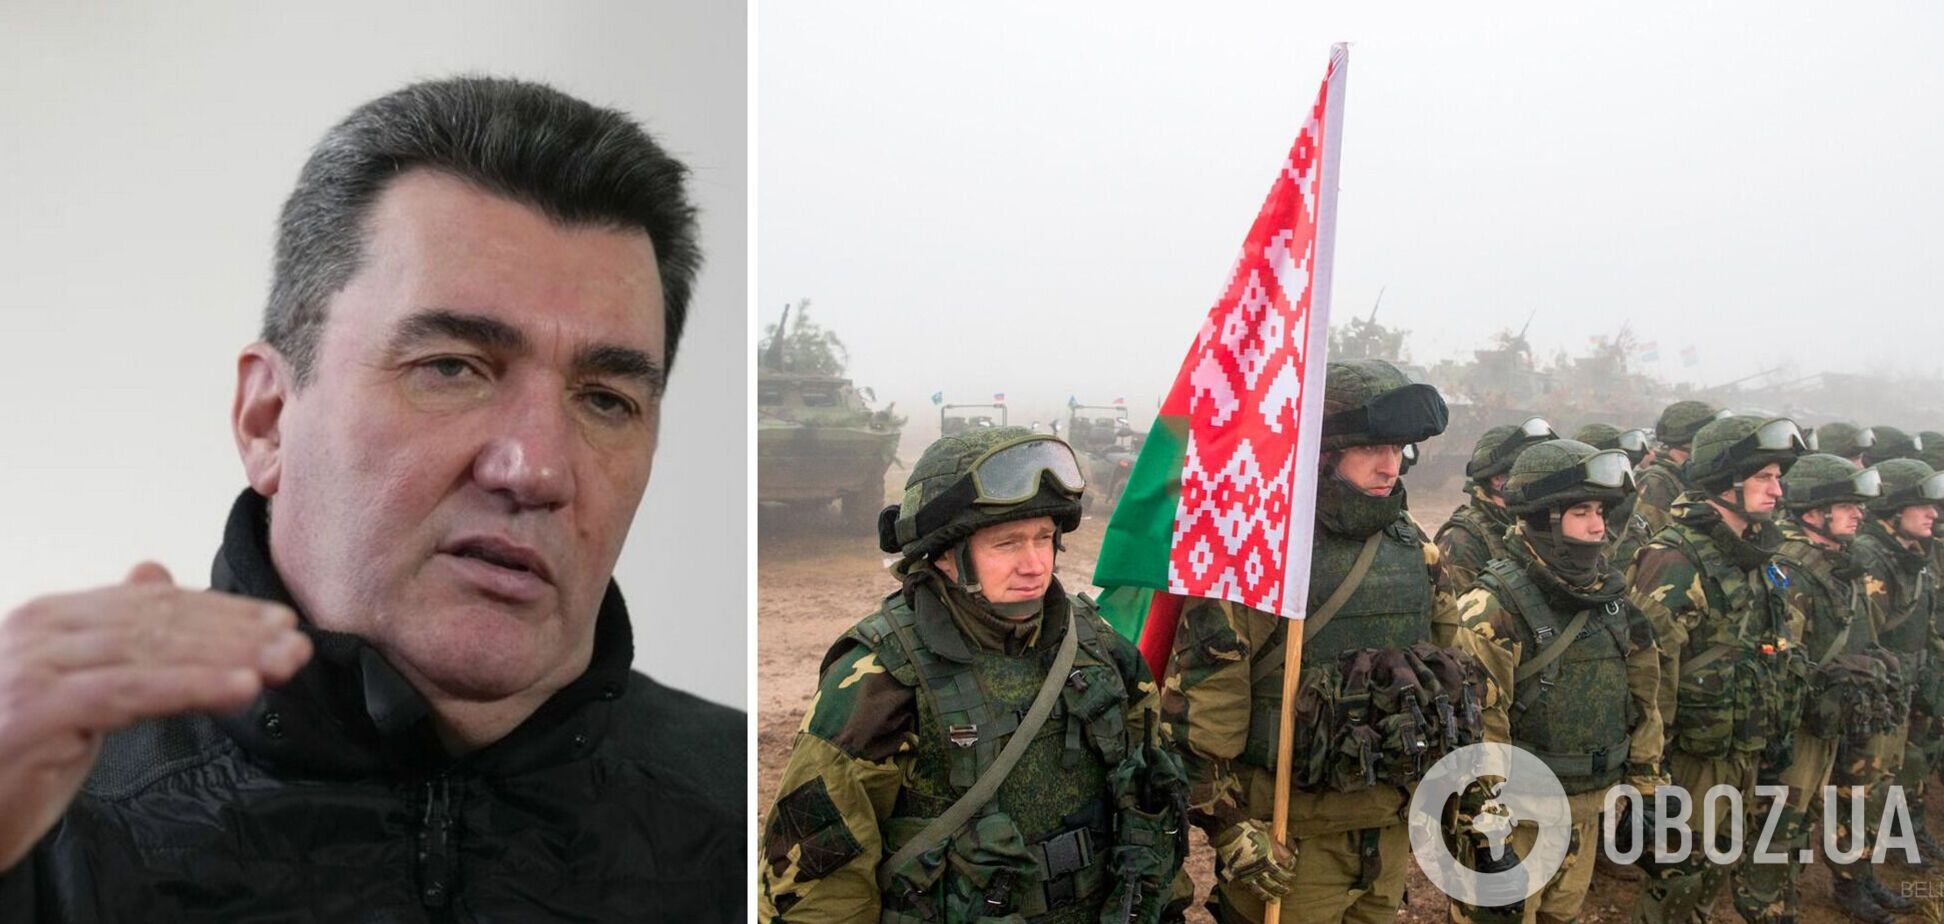 Данилов обратился к белорусским солдатам: вас уничтожат, если вы перейдете украинскую границу